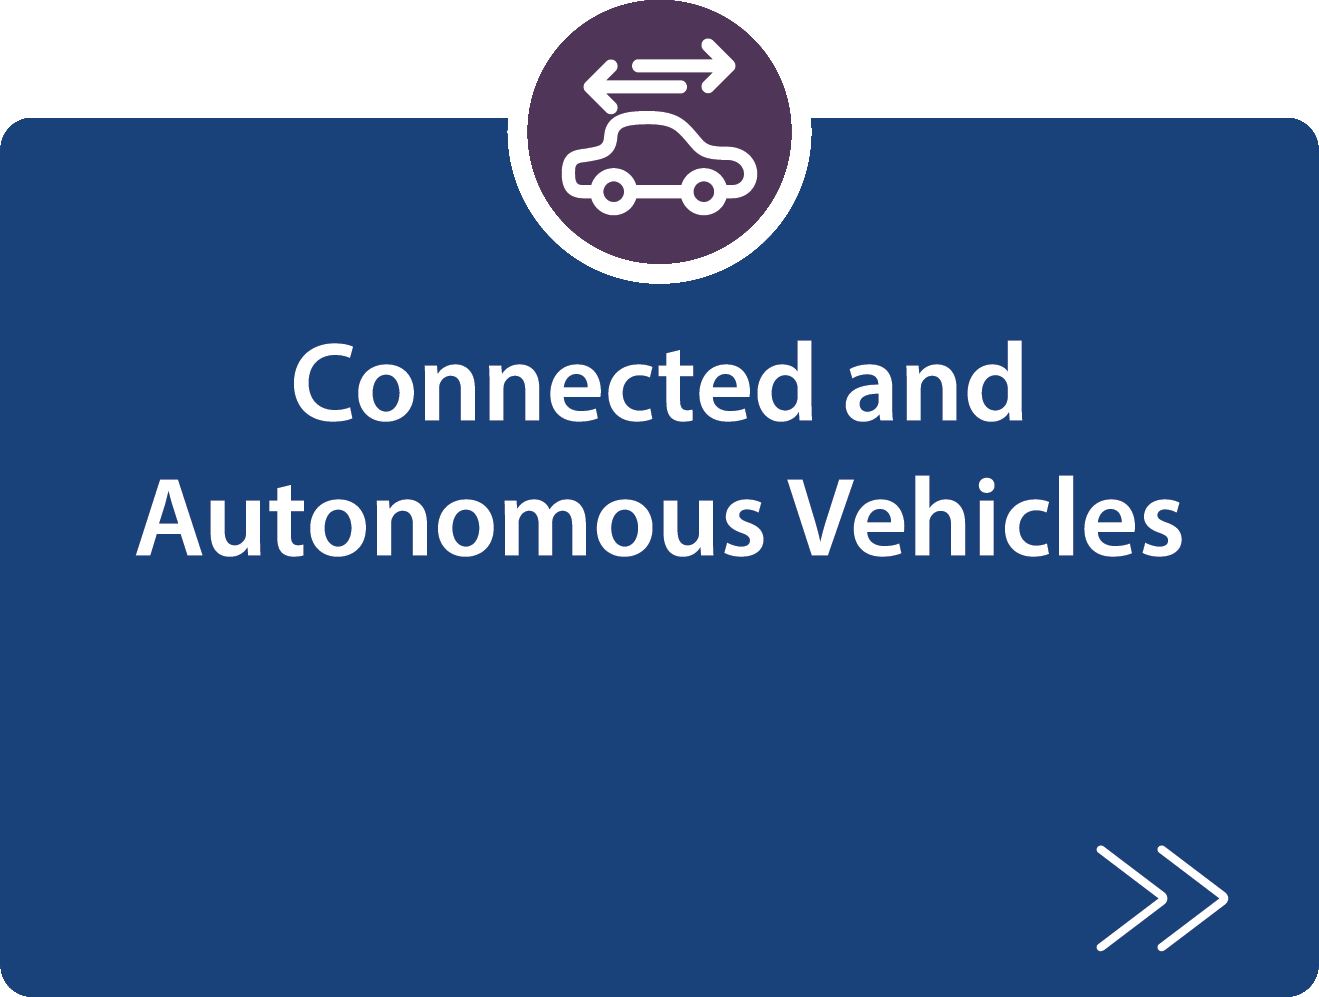 Connected an Autonomous Vehicles strategy description